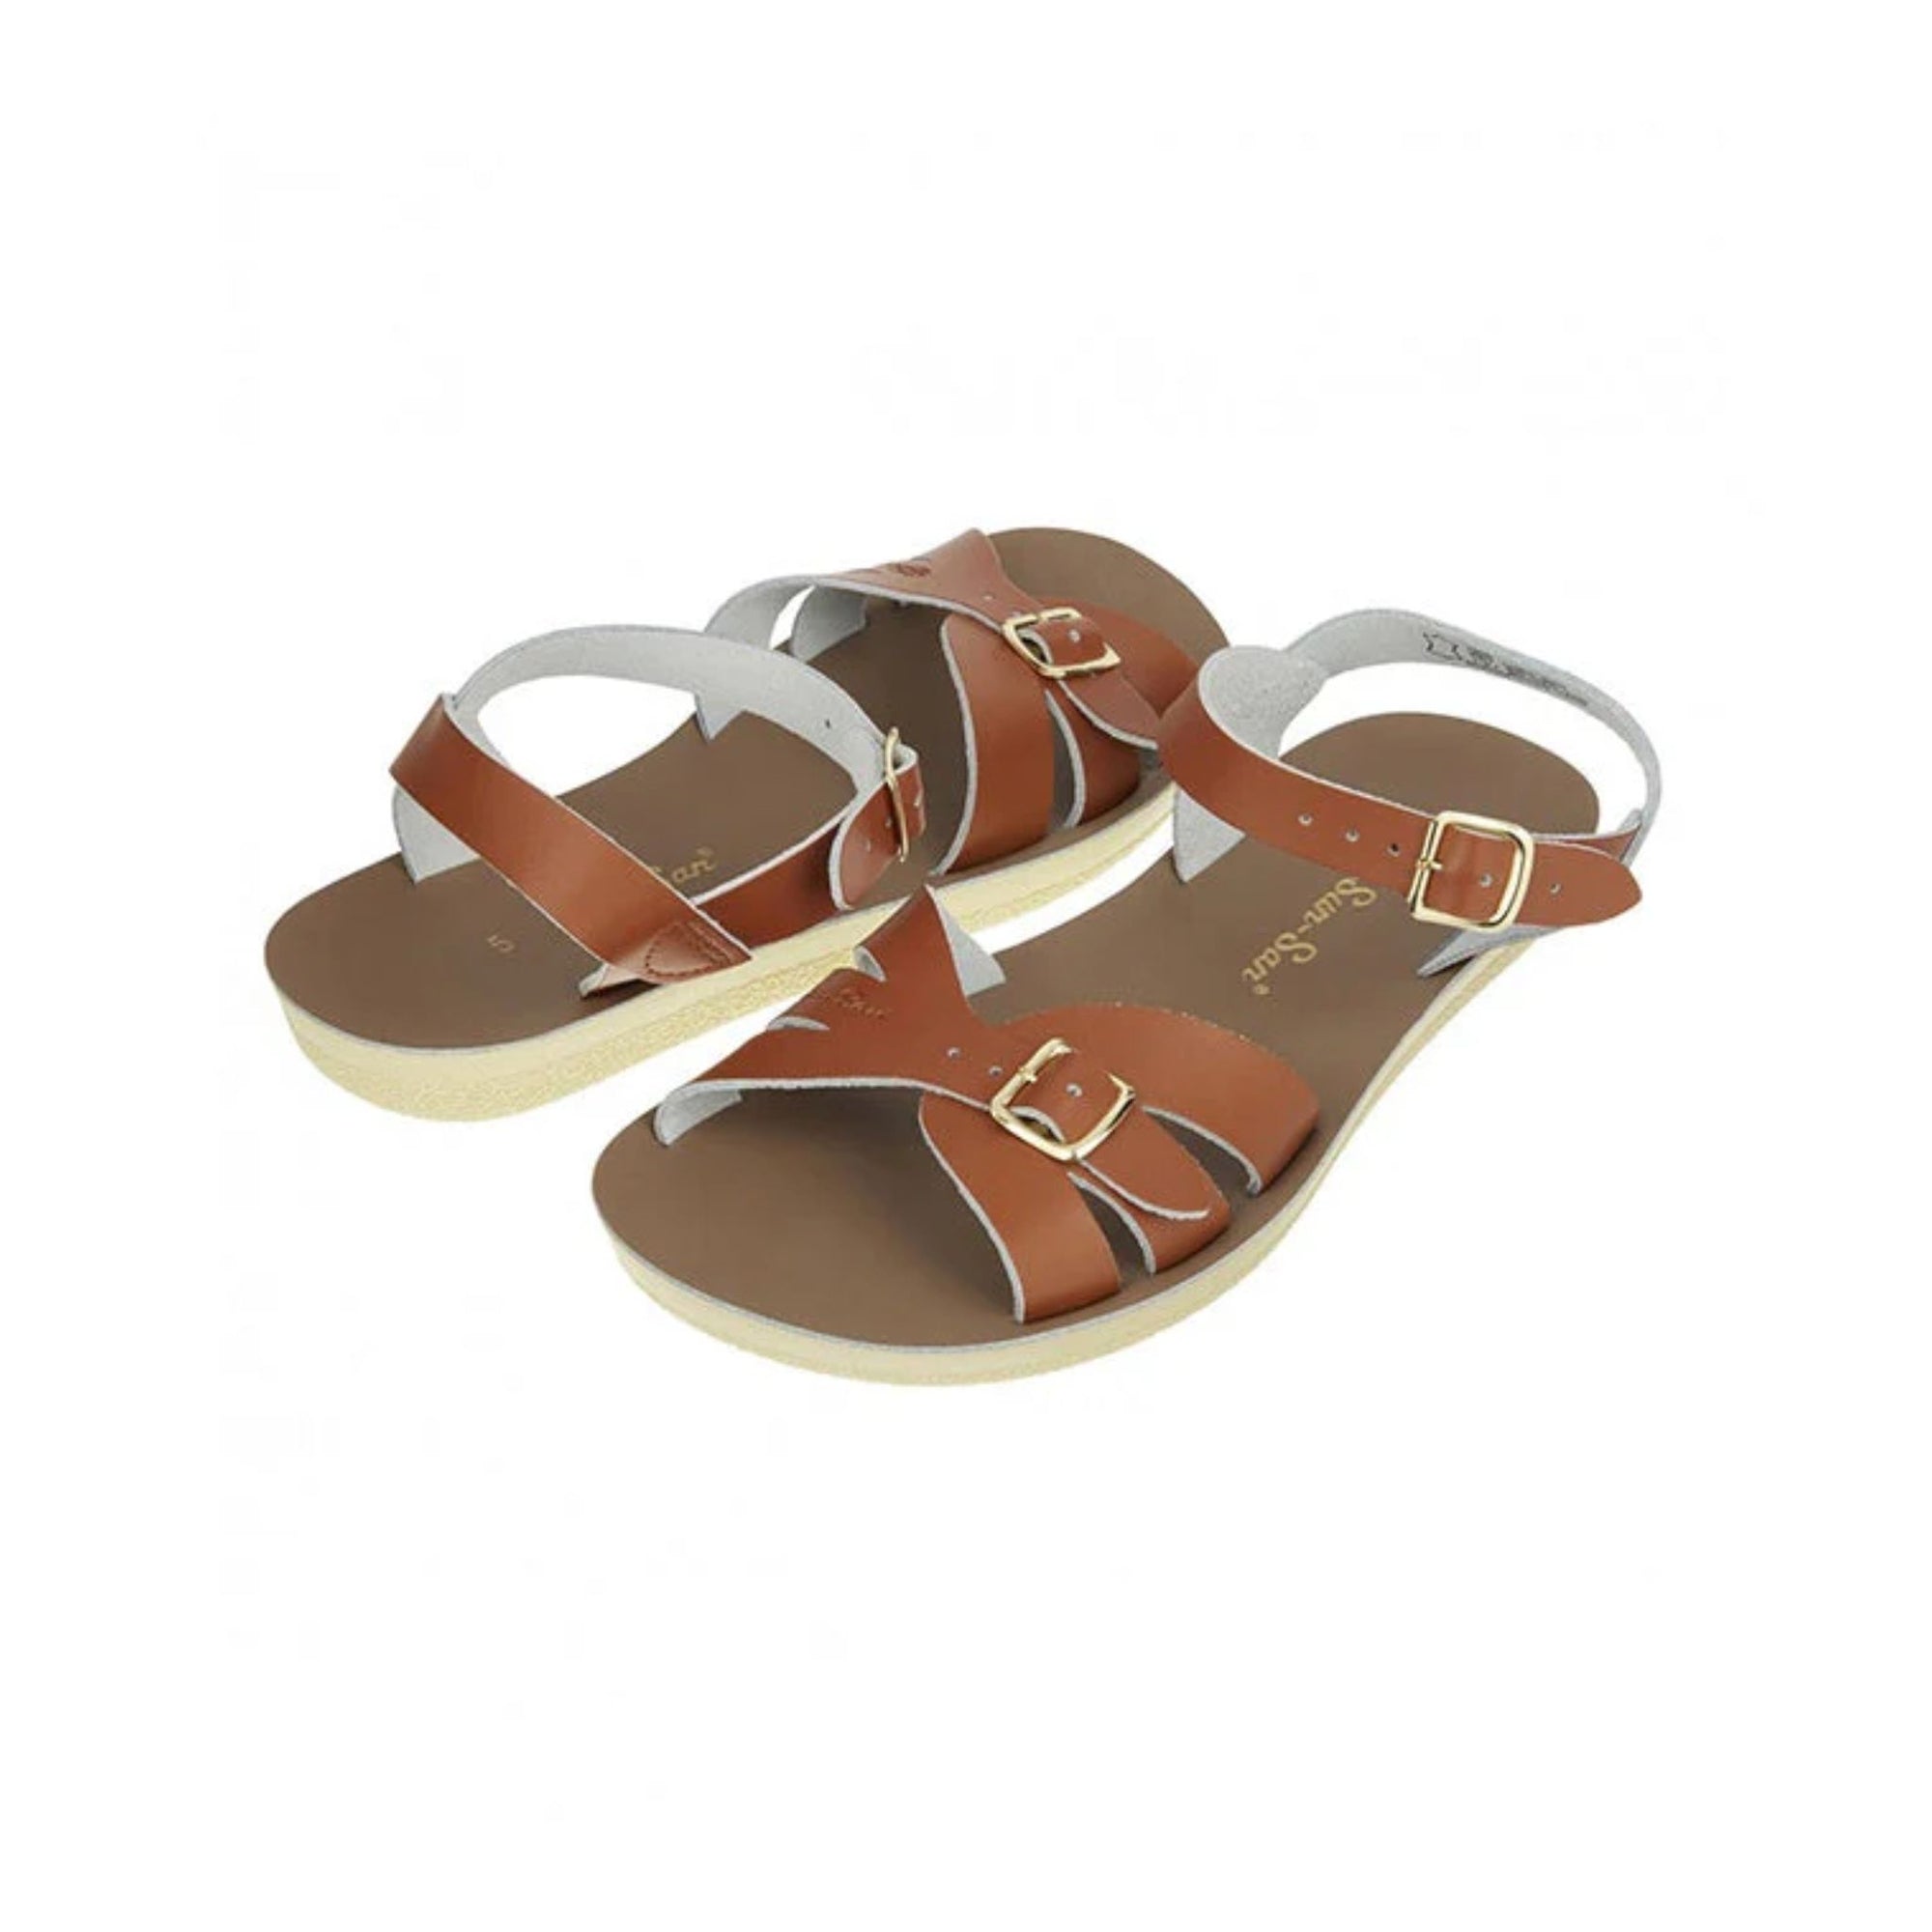 Salt-water Sandals Boardwalk Adult - Tan